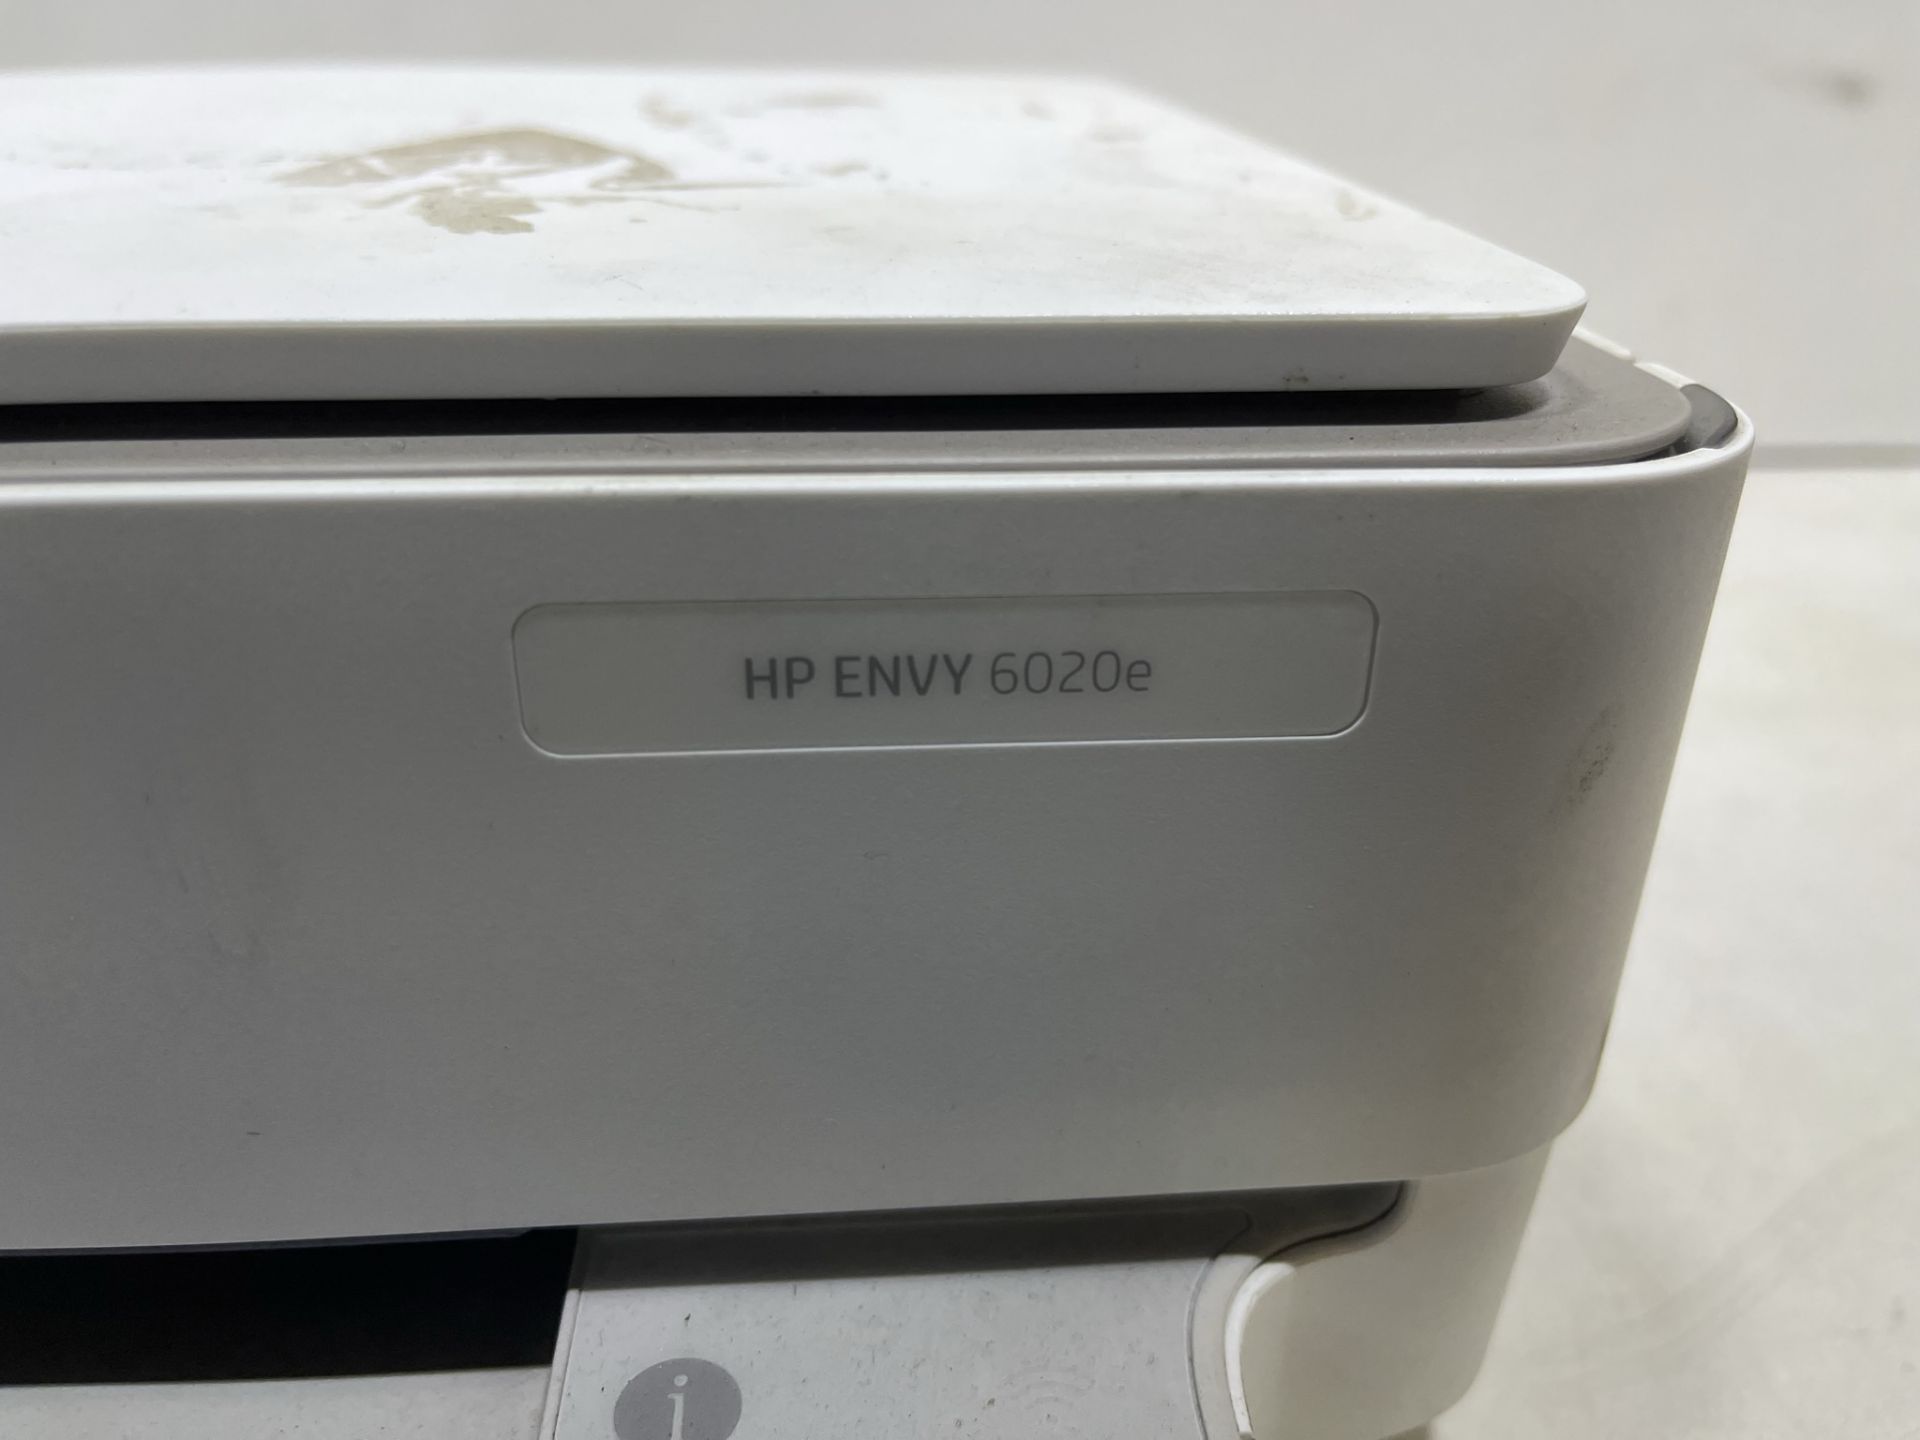 HP ENVY 6020e All-in-One Inkjet Printer - Image 4 of 5